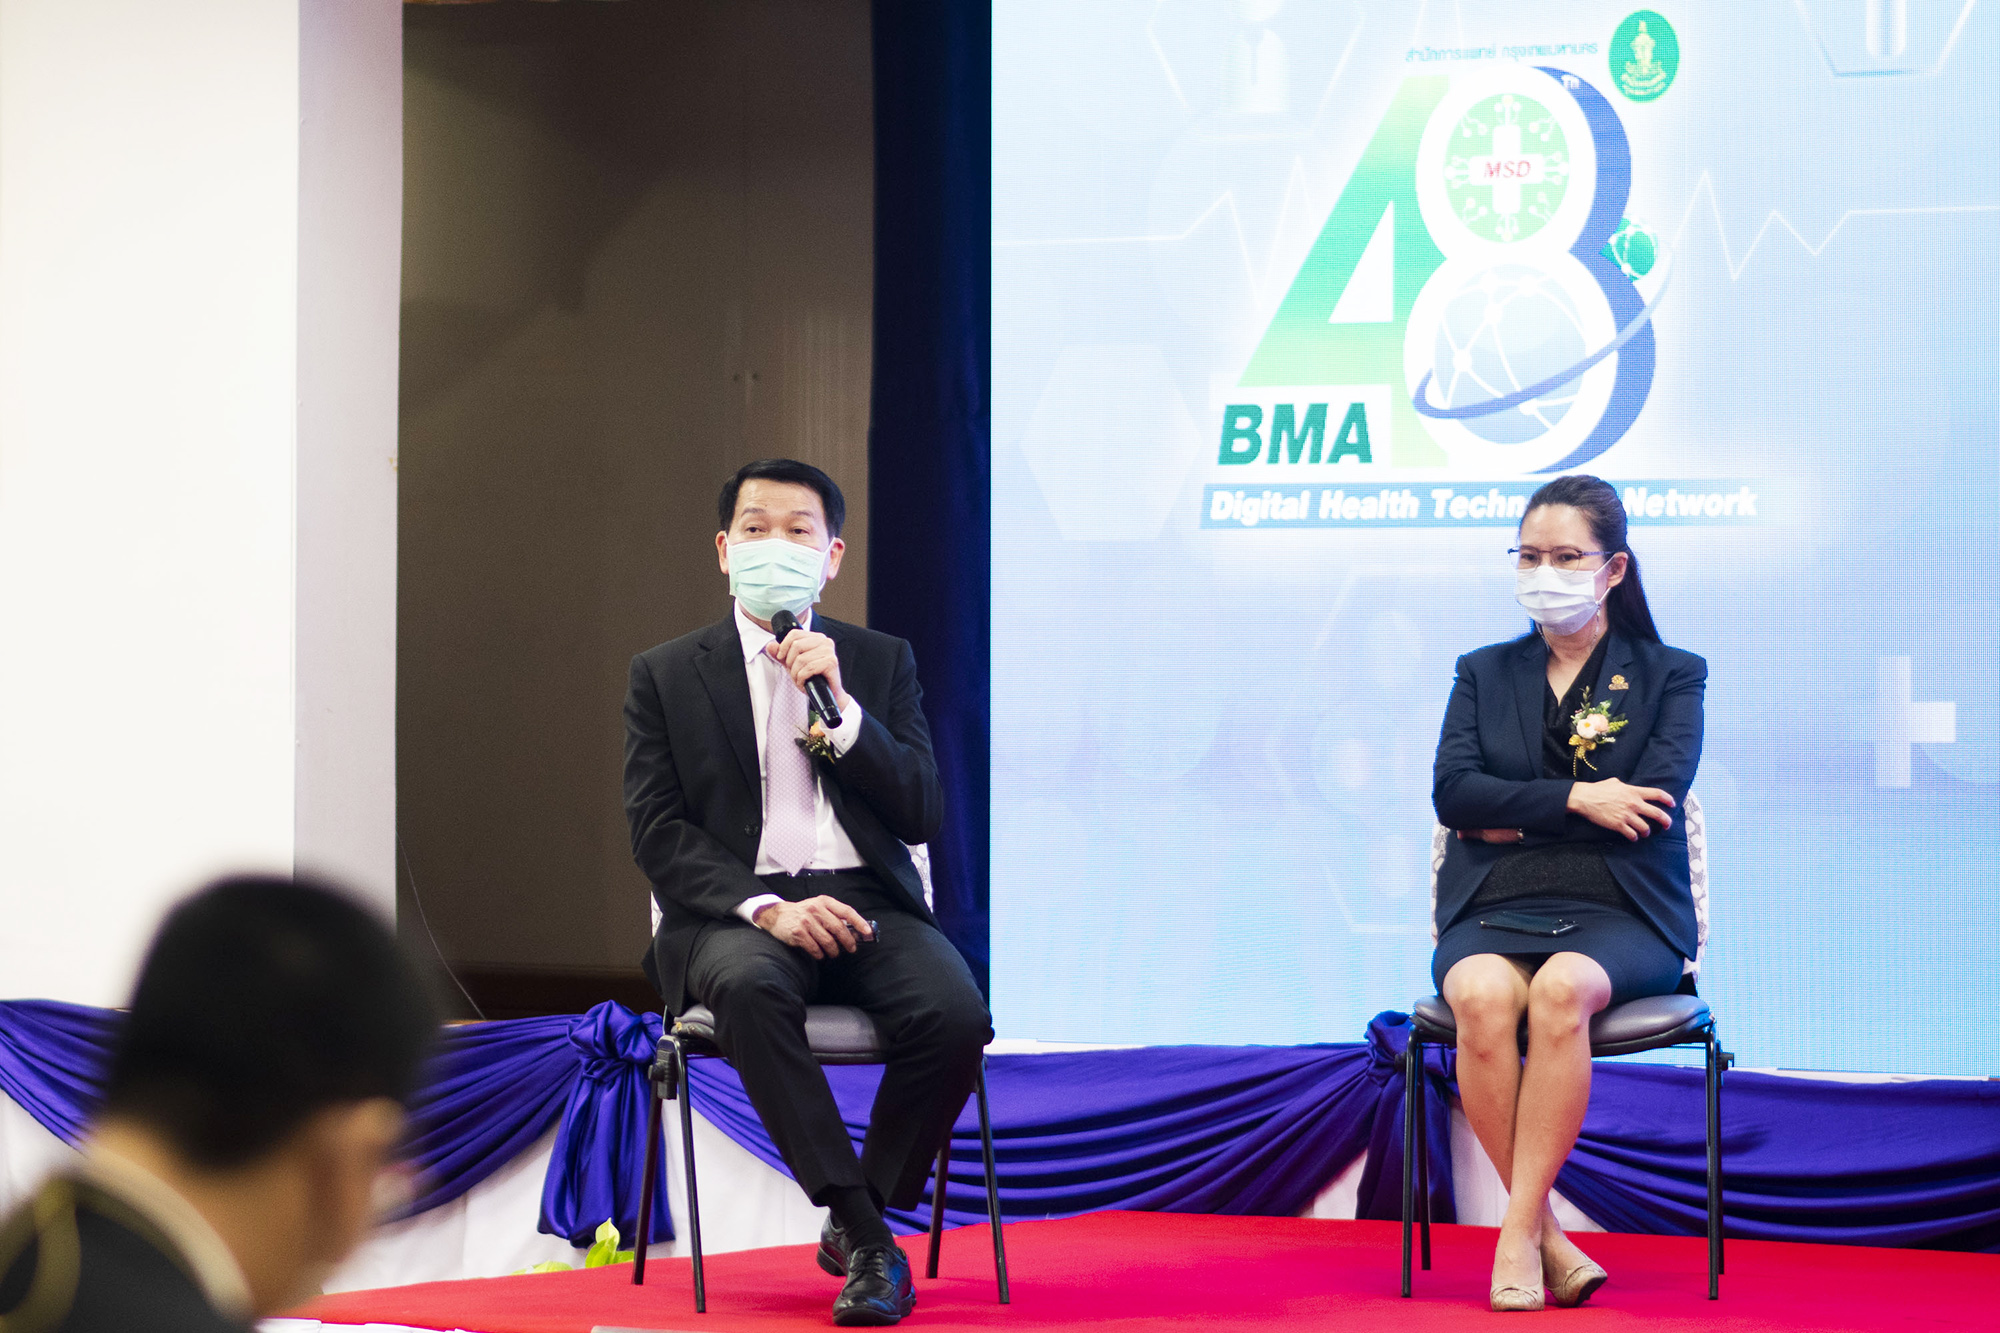 เสวนา BMA Digital Health Technology Network ครบรอบ 48 ปี สำนักการแพทย์กรุงเทพมหานคร